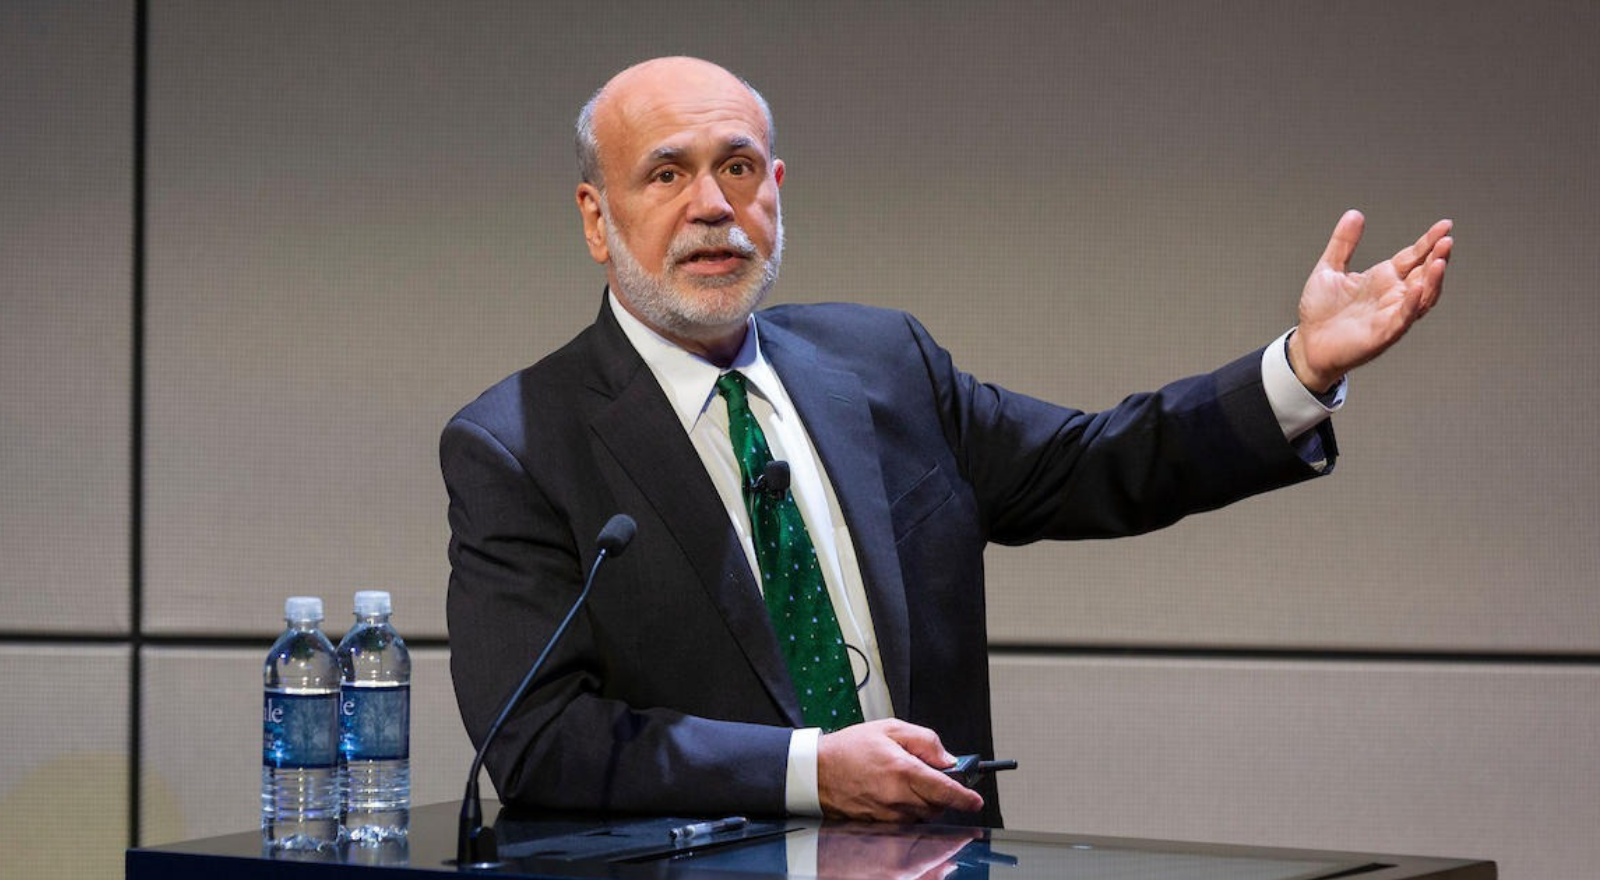 Ben Bernanke Federal Reserve